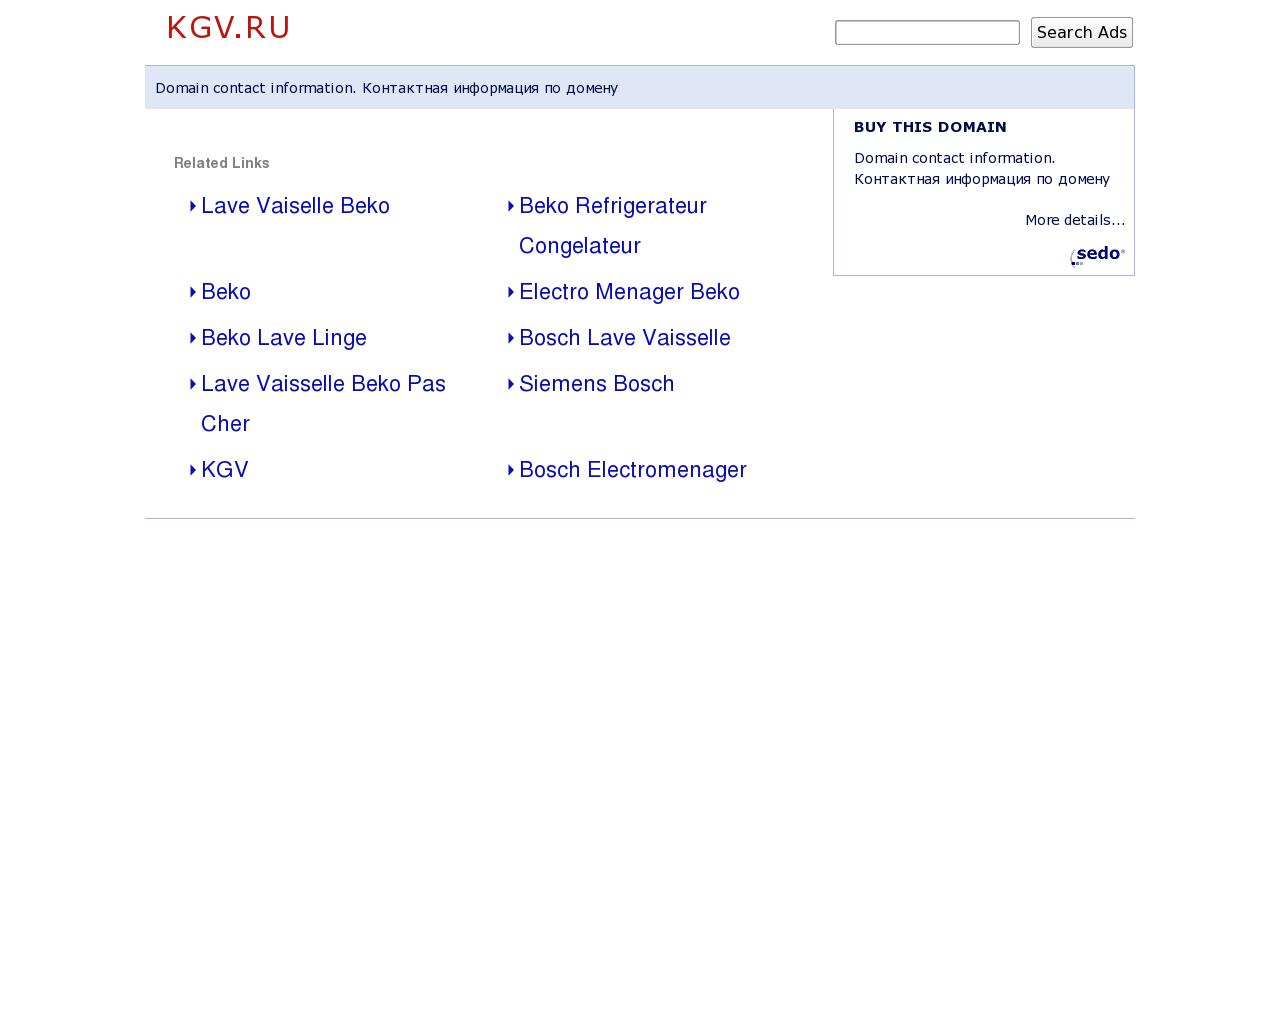 Изображение сайта kgv.ru в разрешении 1280x1024